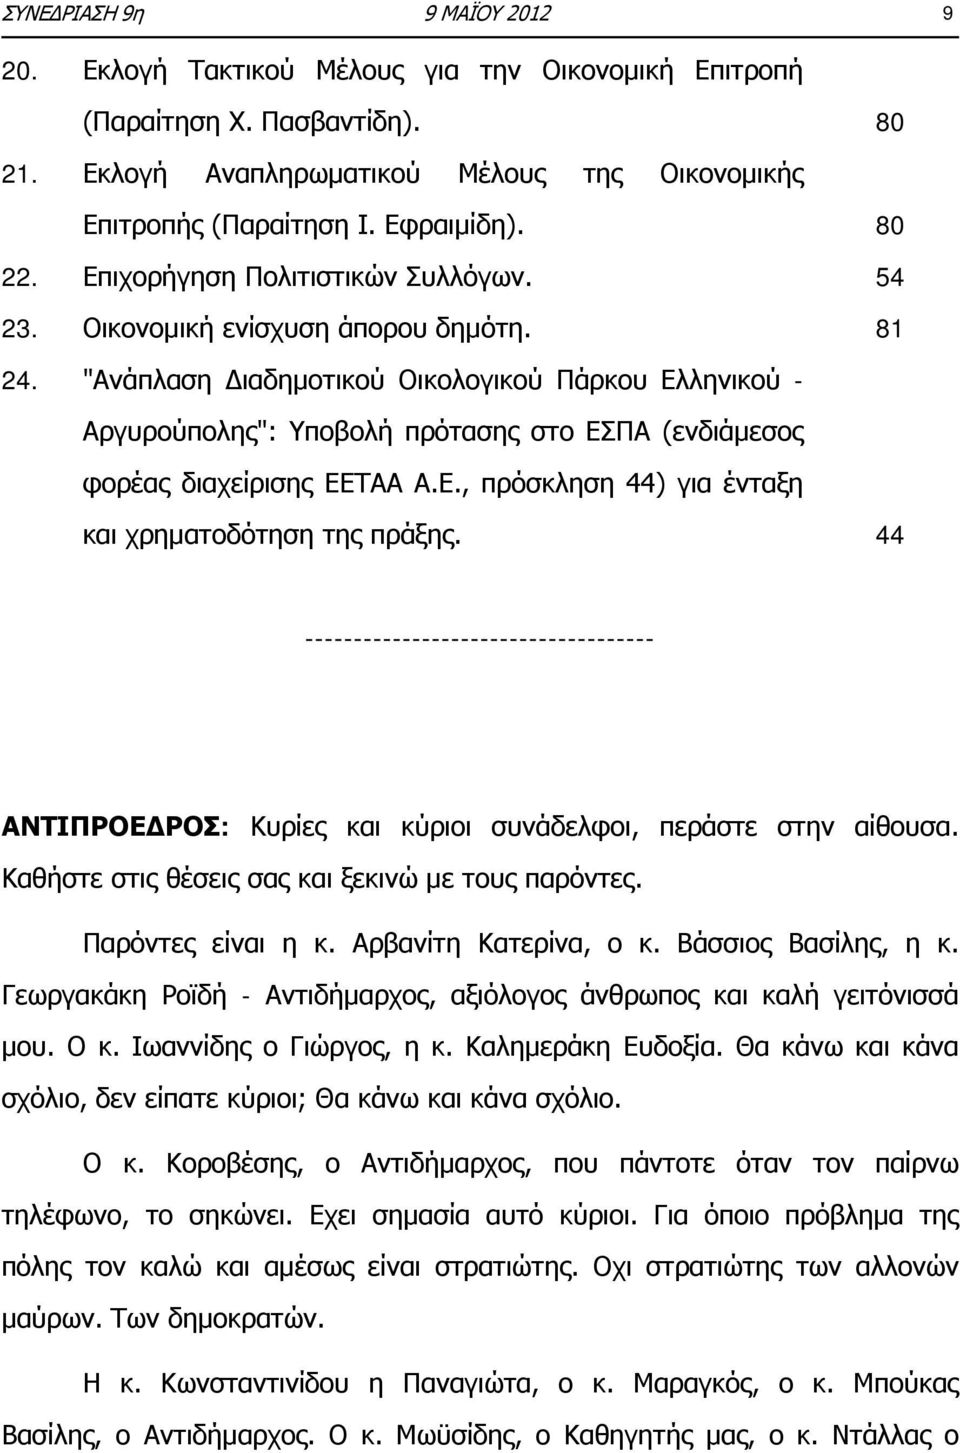 "Ανάπλαση Διαδημοτικού Οικολογικού Πάρκου Ελληνικού - Αργυρούπολης": Υποβολή πρότασης στο ΕΣΠΑ (ενδιάμεσος φορέας διαχείρισης ΕΕΤΑΑ Α.Ε., πρόσκληση 44) για ένταξη και χρηματοδότηση της πράξης.